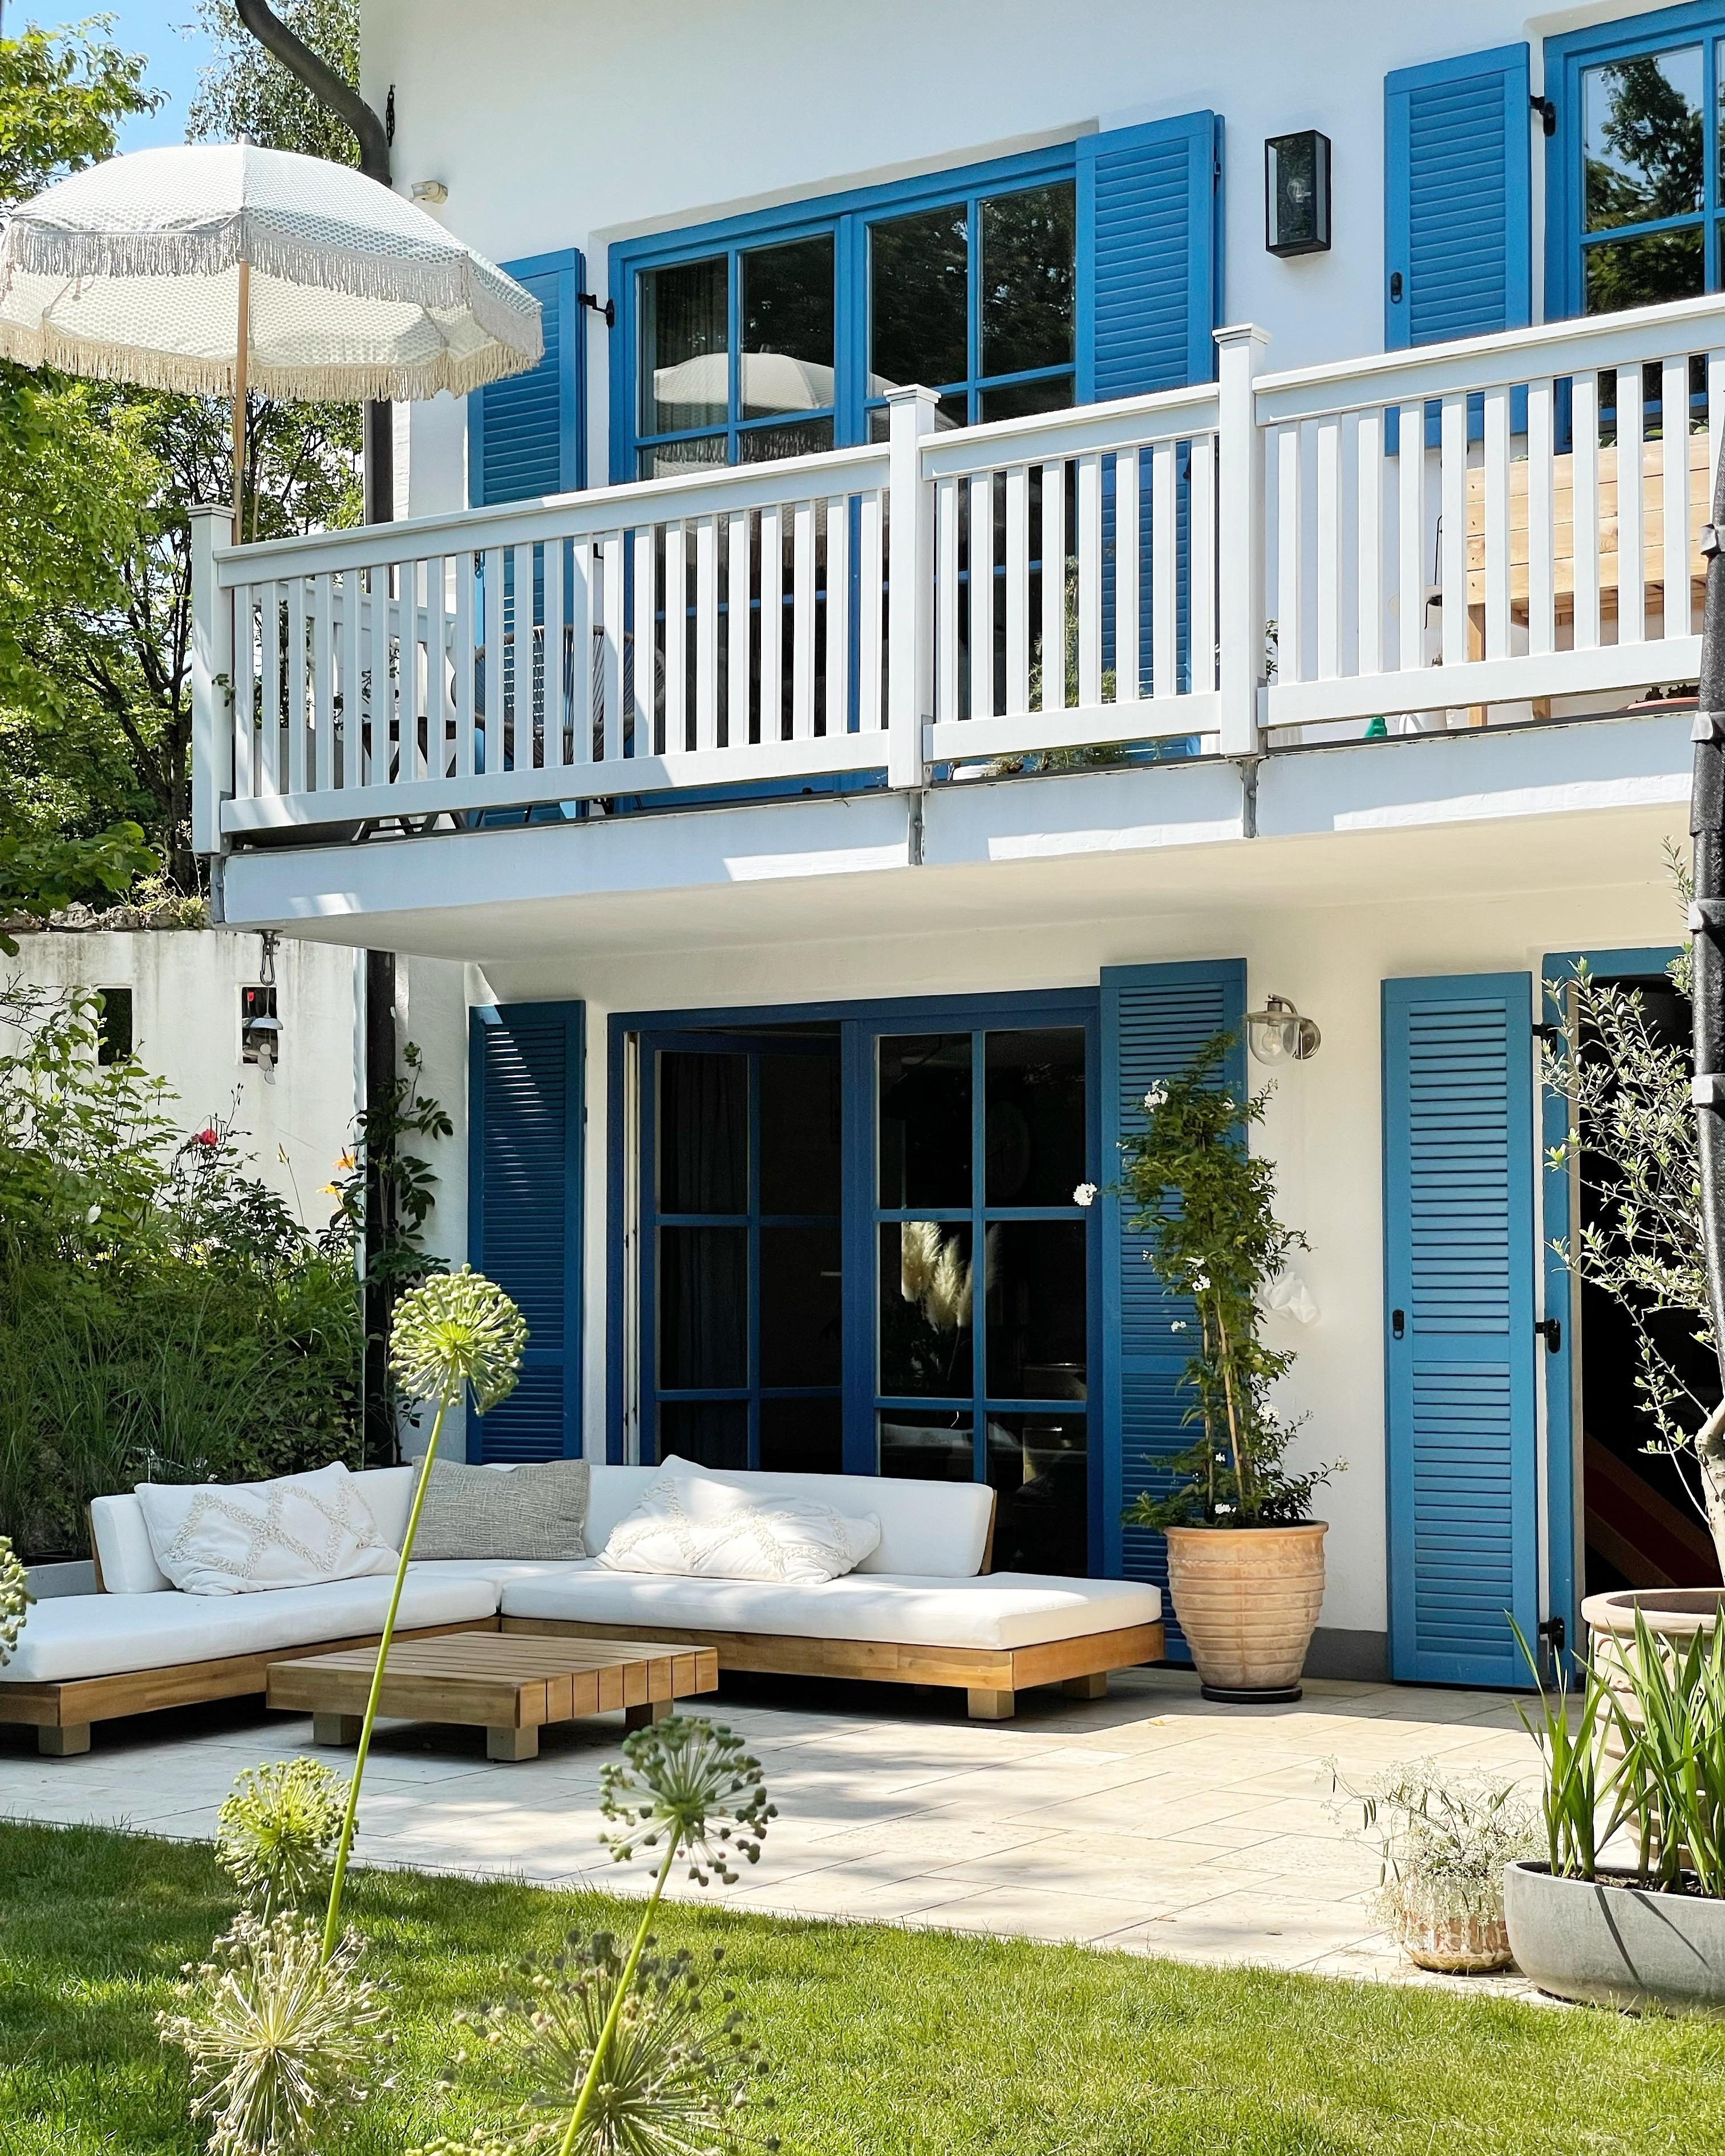 Ich freue mich auf hoffentlich noch einige sonnige Tage im Garten!
#garten #terrasse #balkon #lounge